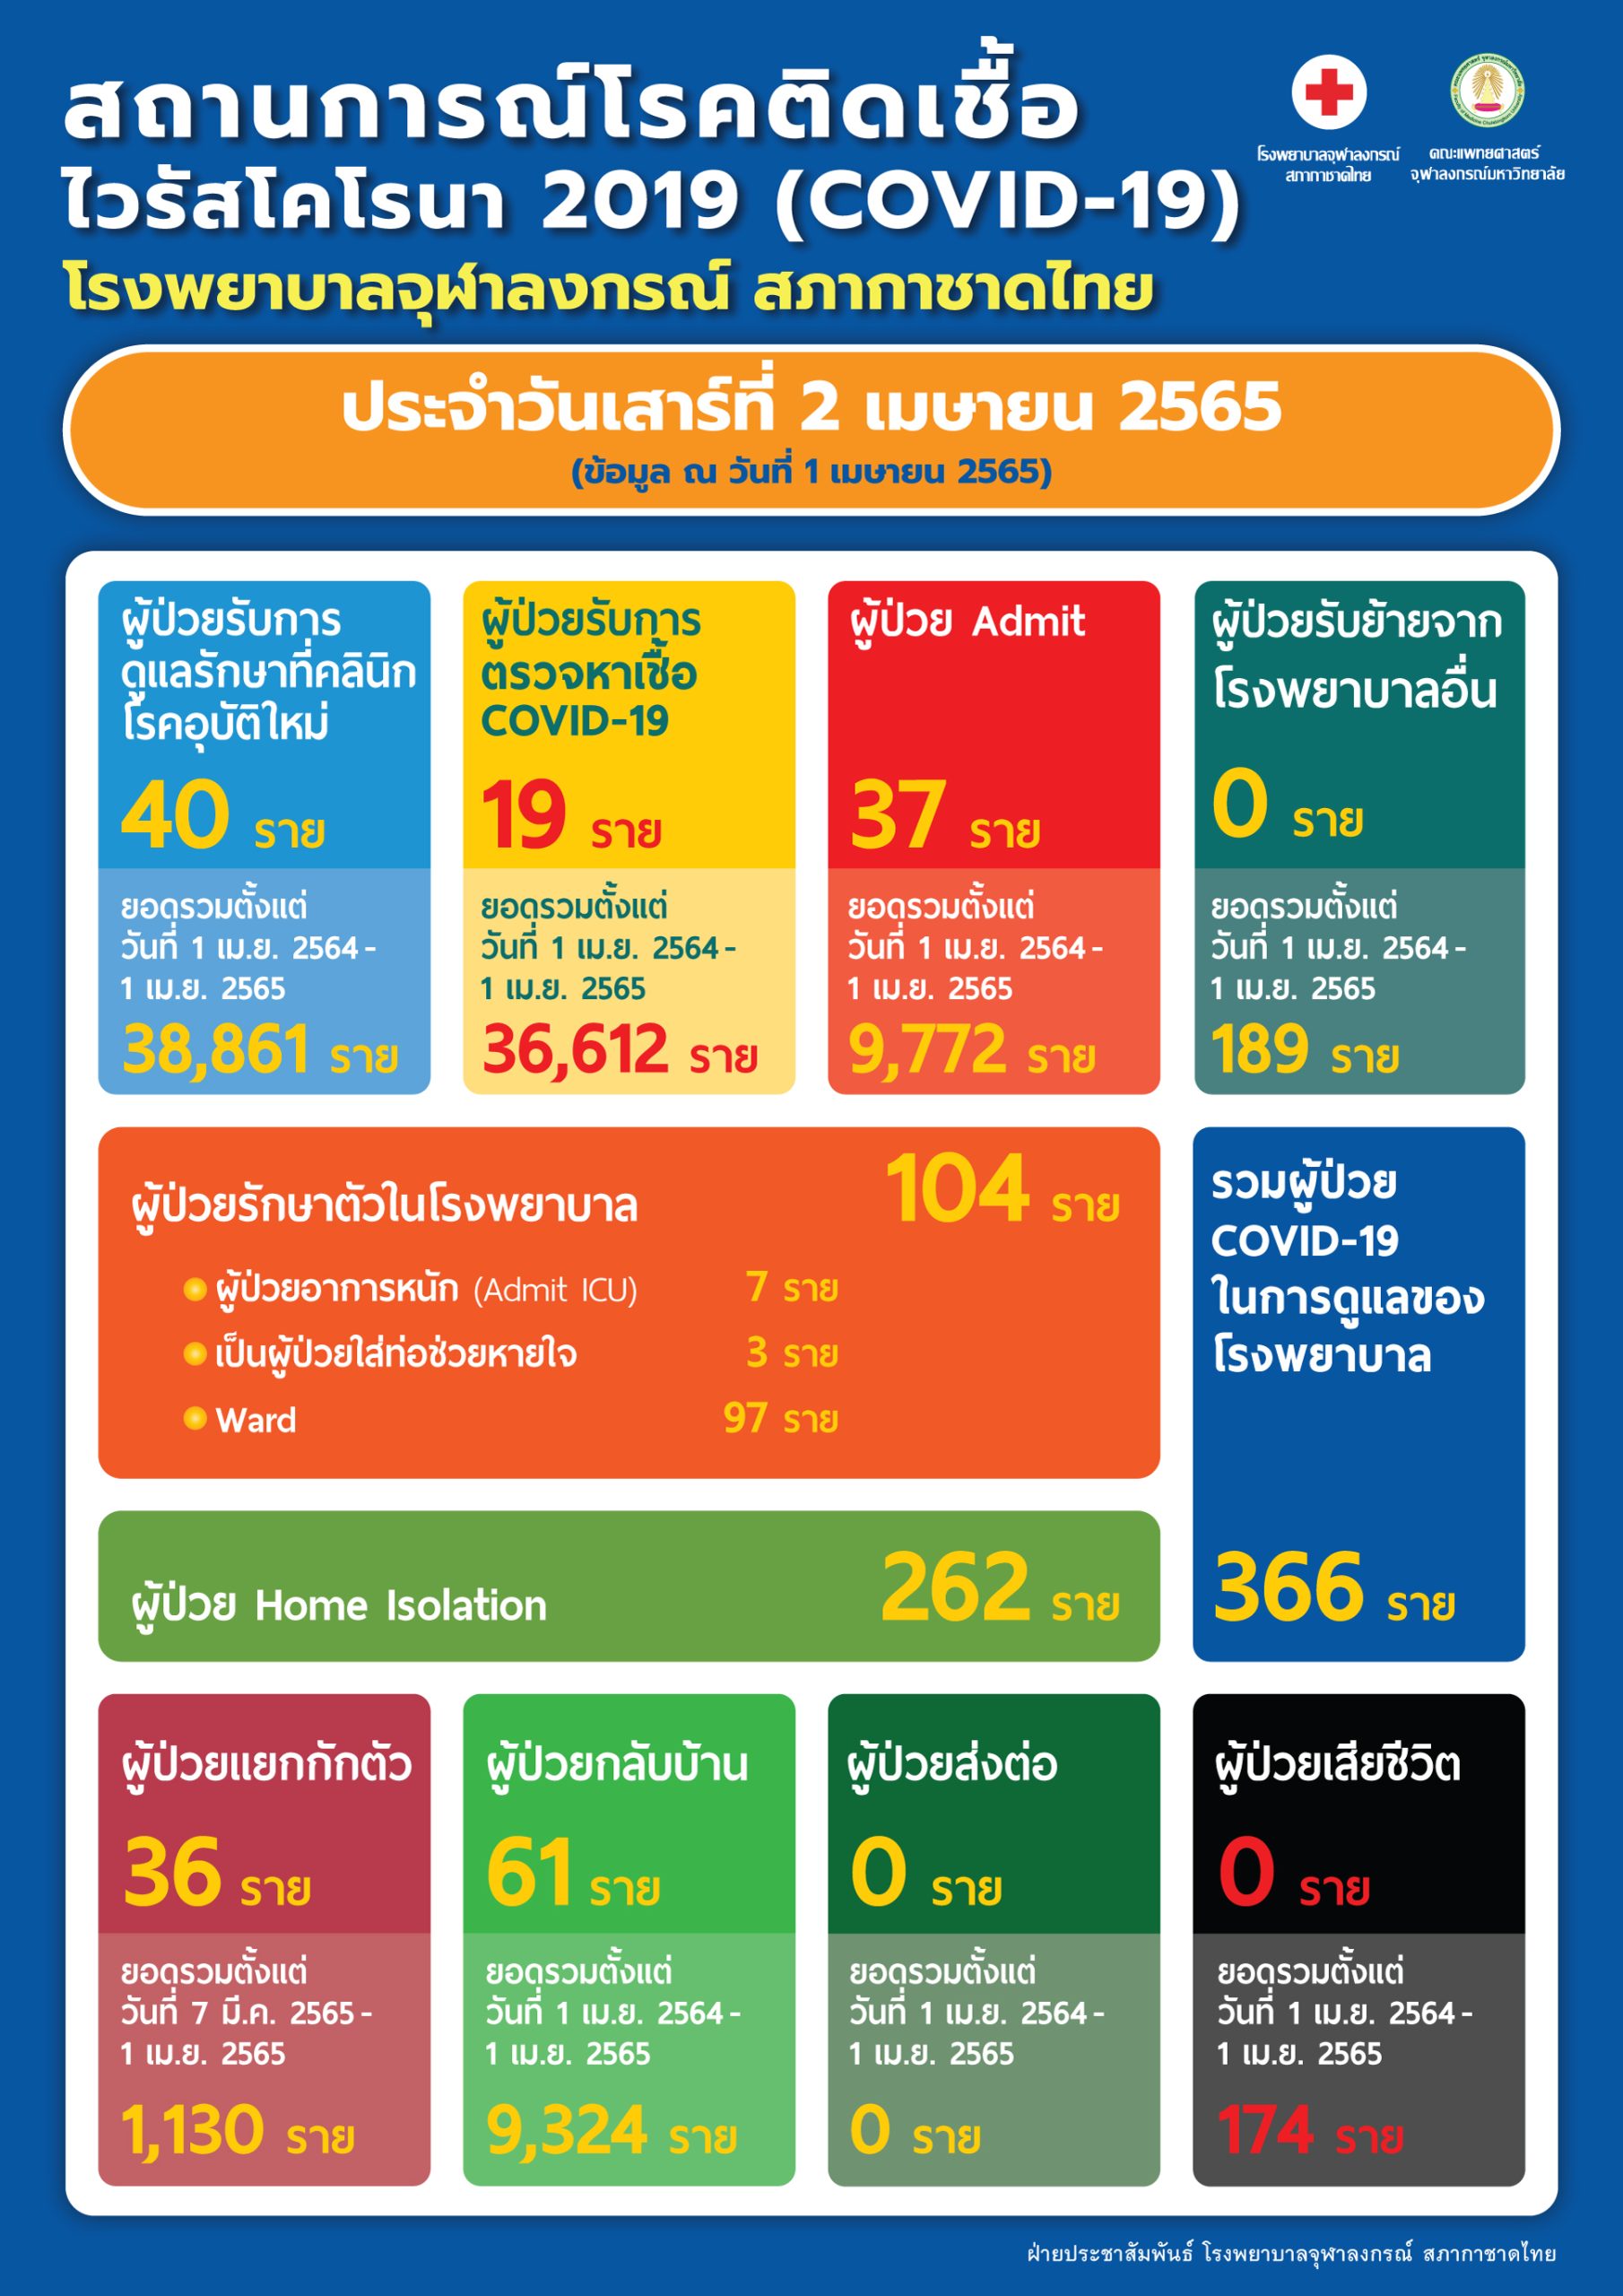 สถานการณ์โรคติดเชื้อไวรัสโคโรนา 2019 (COVID-19) โรงพยาบาลจุฬาลงกรณ์ สภากาชาดไทย ประจำวันเสาร์ที่ 2 เมษายน 2565